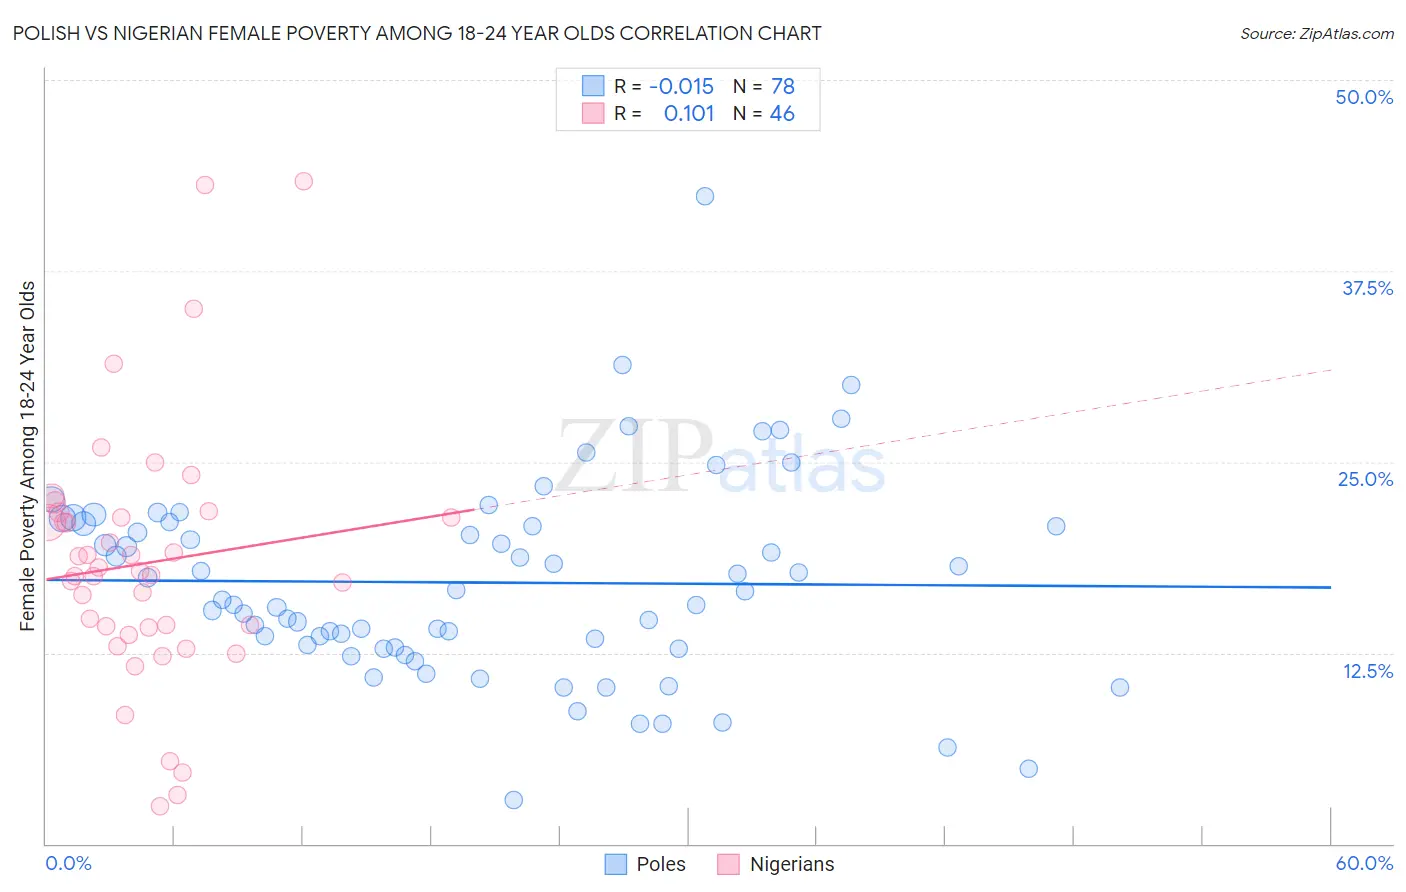 Polish vs Nigerian Female Poverty Among 18-24 Year Olds